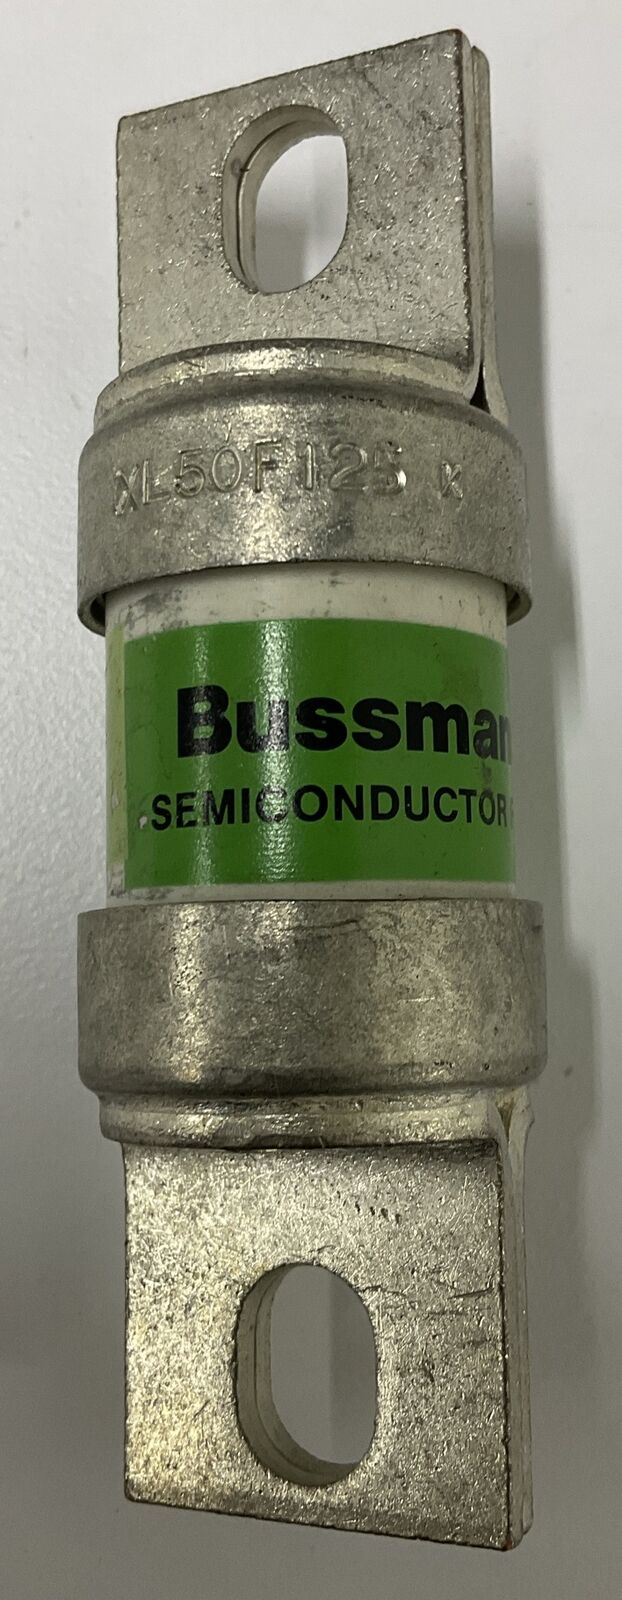 Bussmann xl50F125 Semiconductor Fuse 125 amp (CL327) - 0